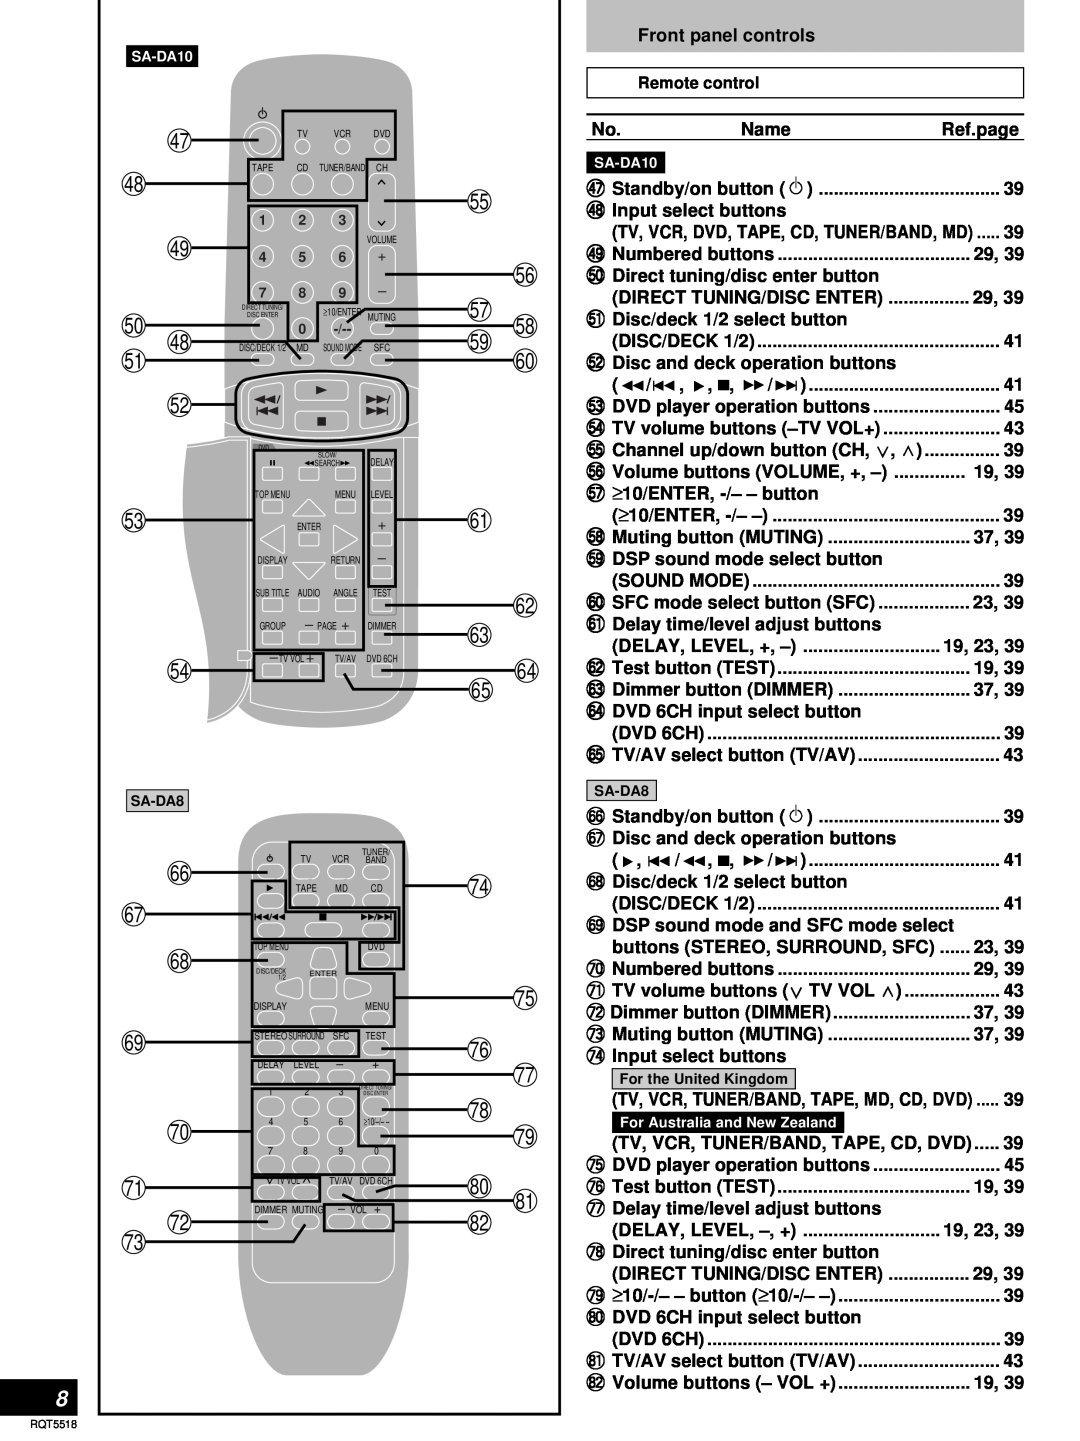 Technics SA-DA10, SA-DA8 operating instructions Front panel controls 